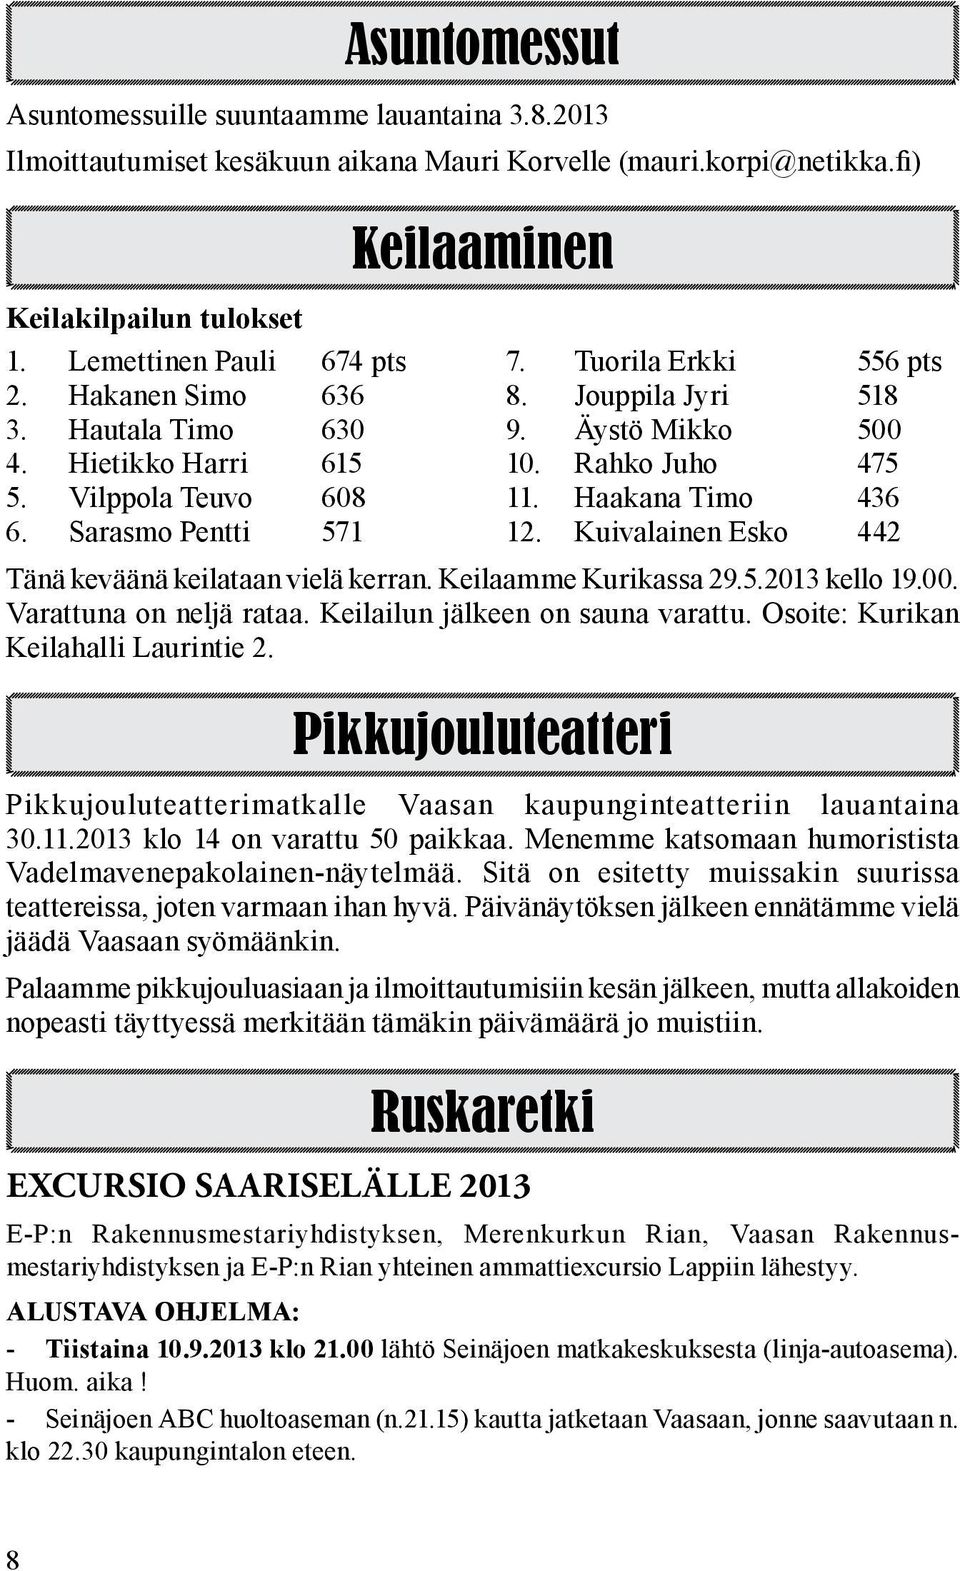 Sarasmo Pentti 571 12. Kuivalainen Esko 442 Tänä keväänä keilataan vielä kerran. Keilaamme Kurikassa 29.5.2013 kello 19.00. Varattuna on neljä rataa. Keilailun jälkeen on sauna varattu.